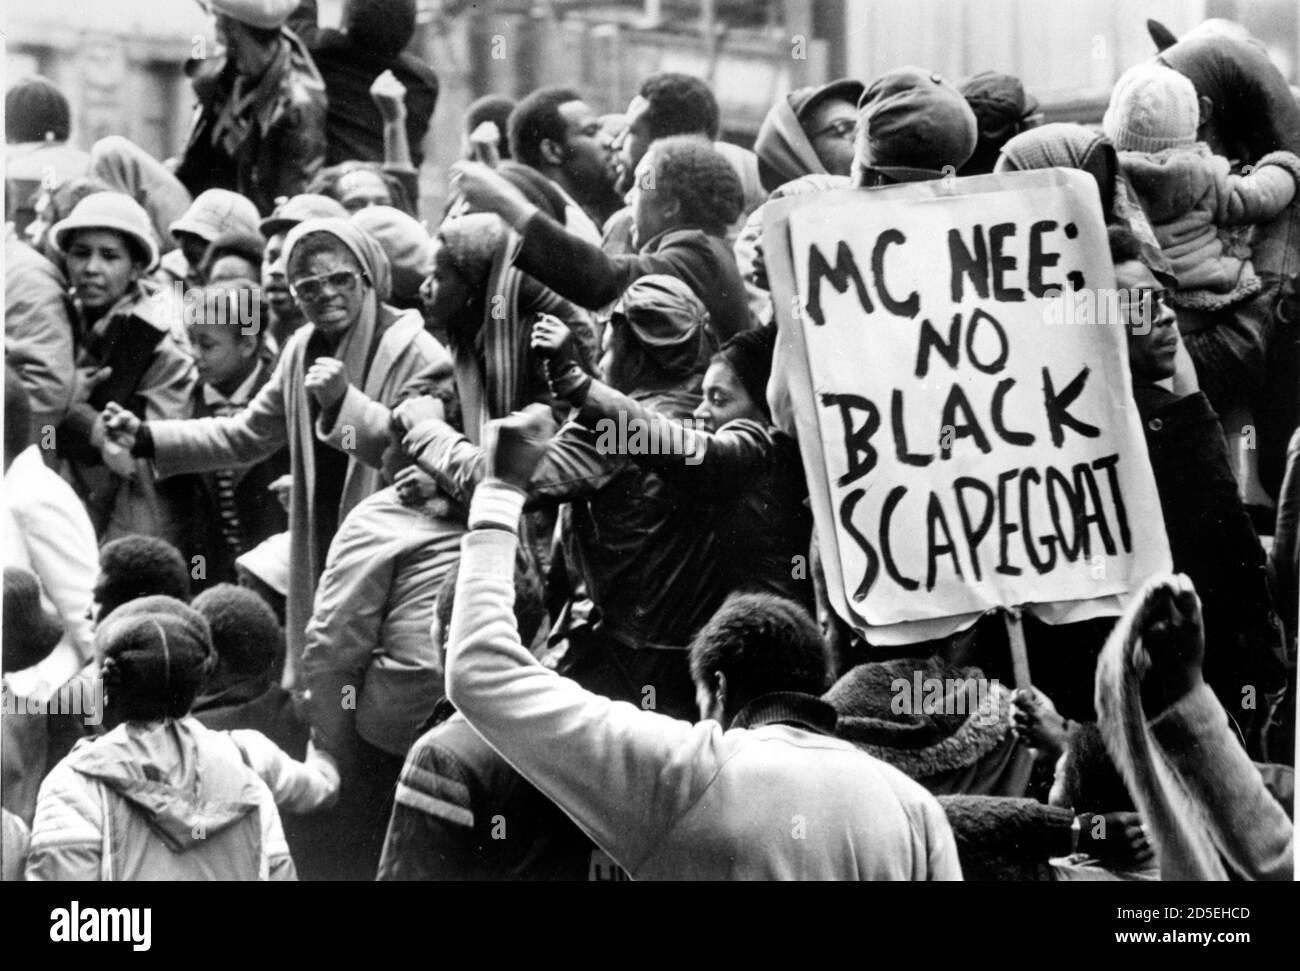 Il giorno d'azione del popolo nero del 1981, migliaia di persone hanno marciato verso Downing Street, pacificamente in dimostrazione per protestare contro la gestione della polizia metropolitana delle indagini sul fuoco della Nuova Croce in cui sono morte 13 persone nere. McNee è il commissario della polizia allora incontrato, David McNee, che ha presieduto alcune delle tensioni razziali più difettose fra la comunità nera e la polizia. Foto Stock